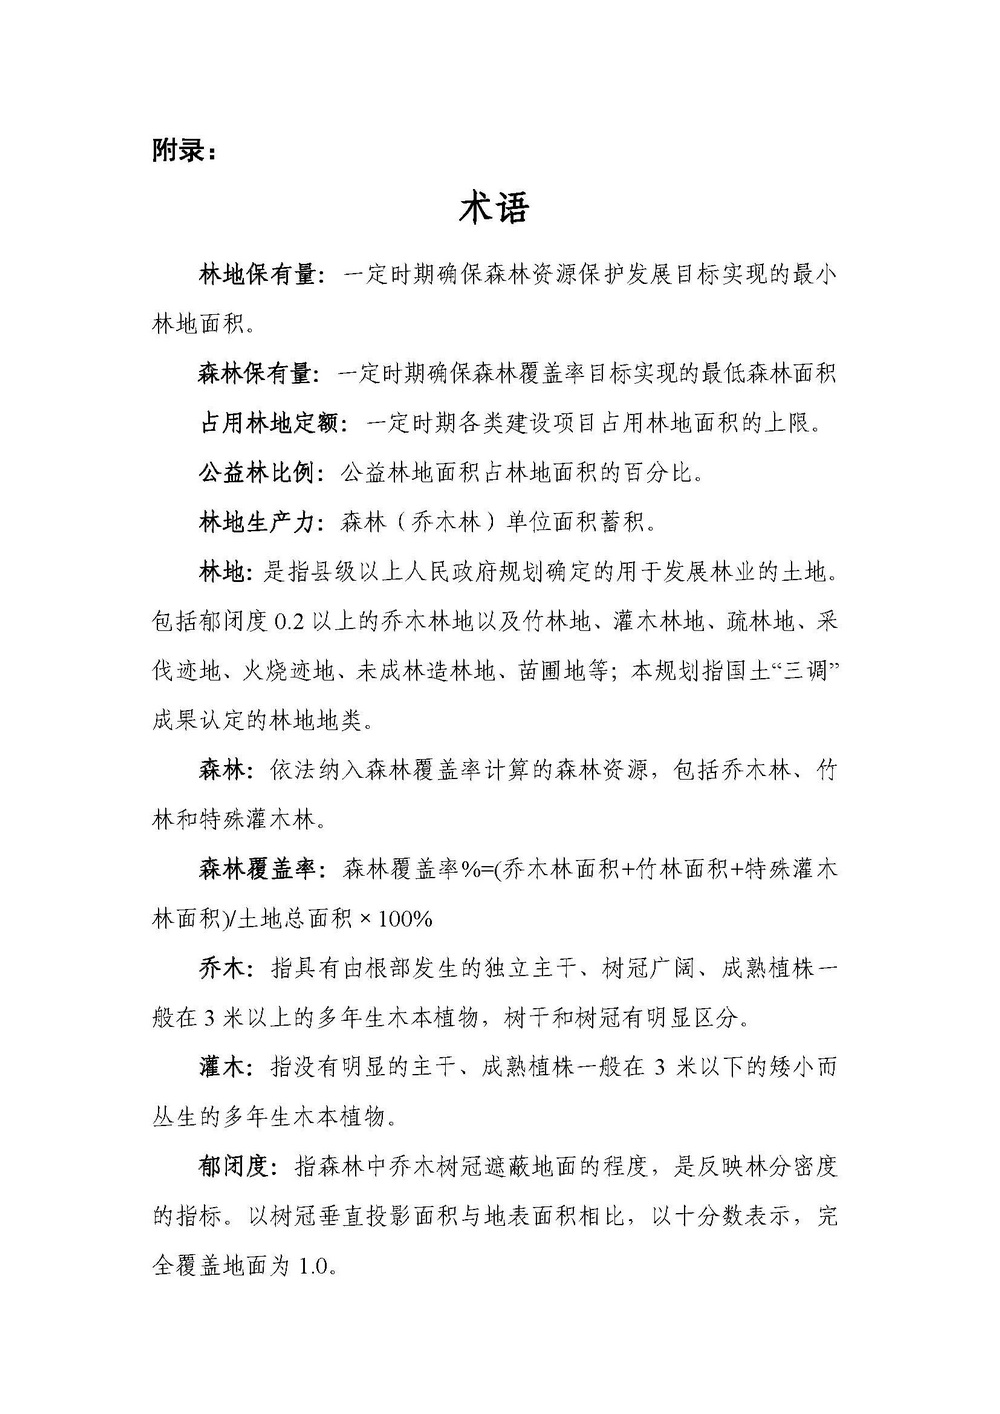 上海市森林和林地保护利用规划文本 公开稿 附图_页面_64.jpg